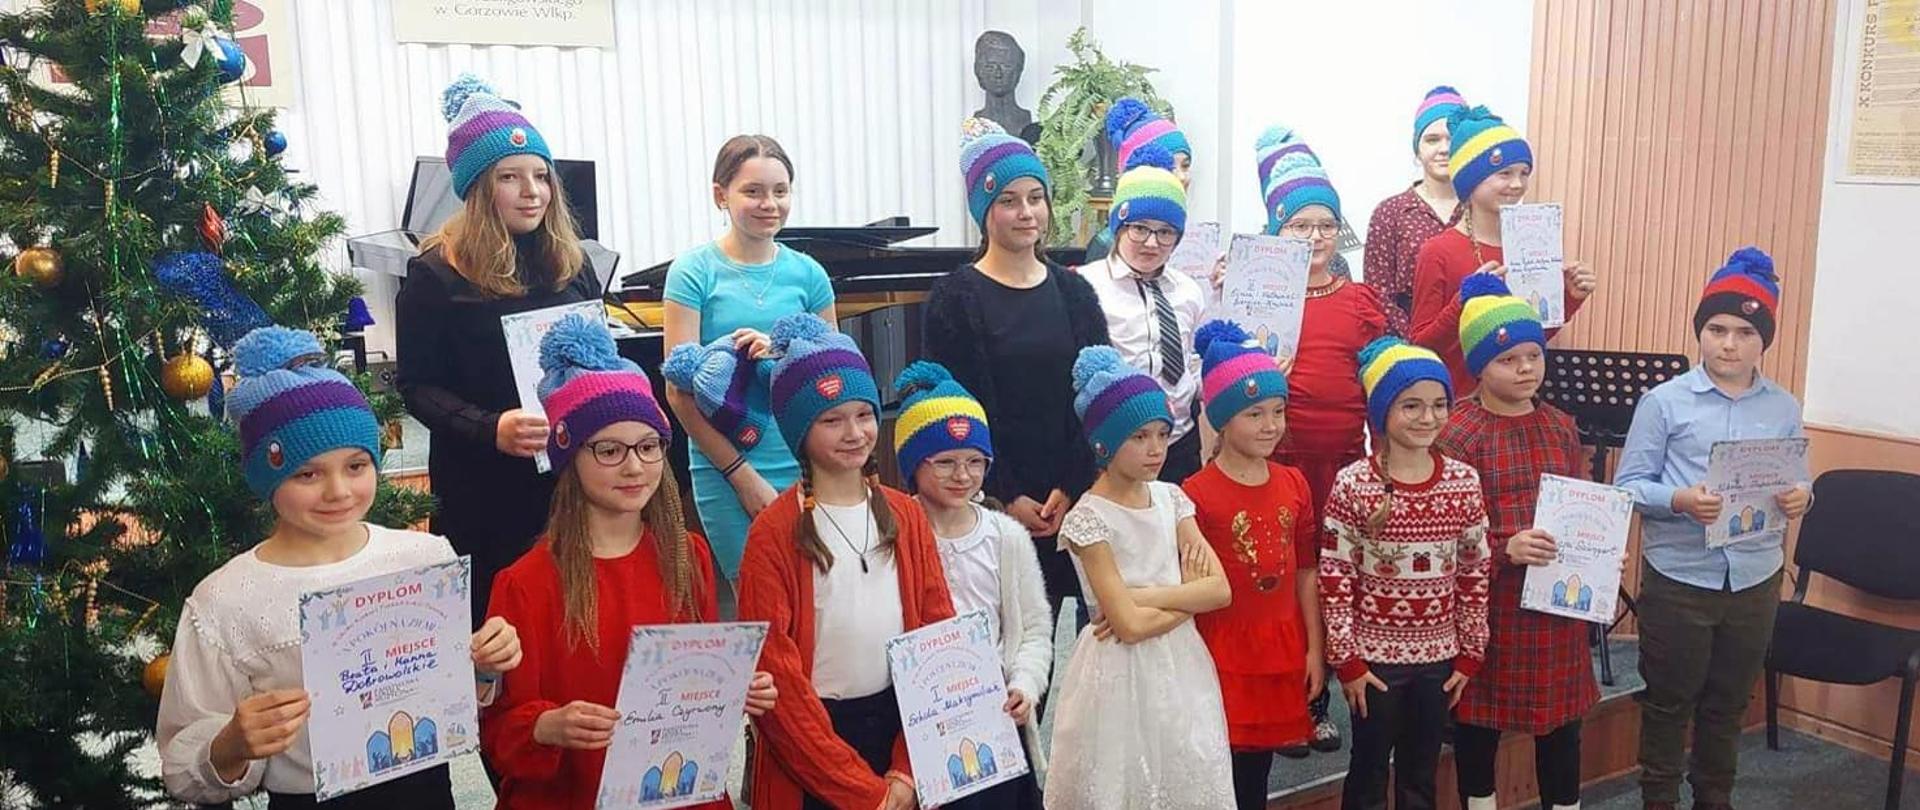 Grupa dzieci w czapkach w kolorowe paski, trzymająca dyplomy. Z lewej strony ubrana choinka.